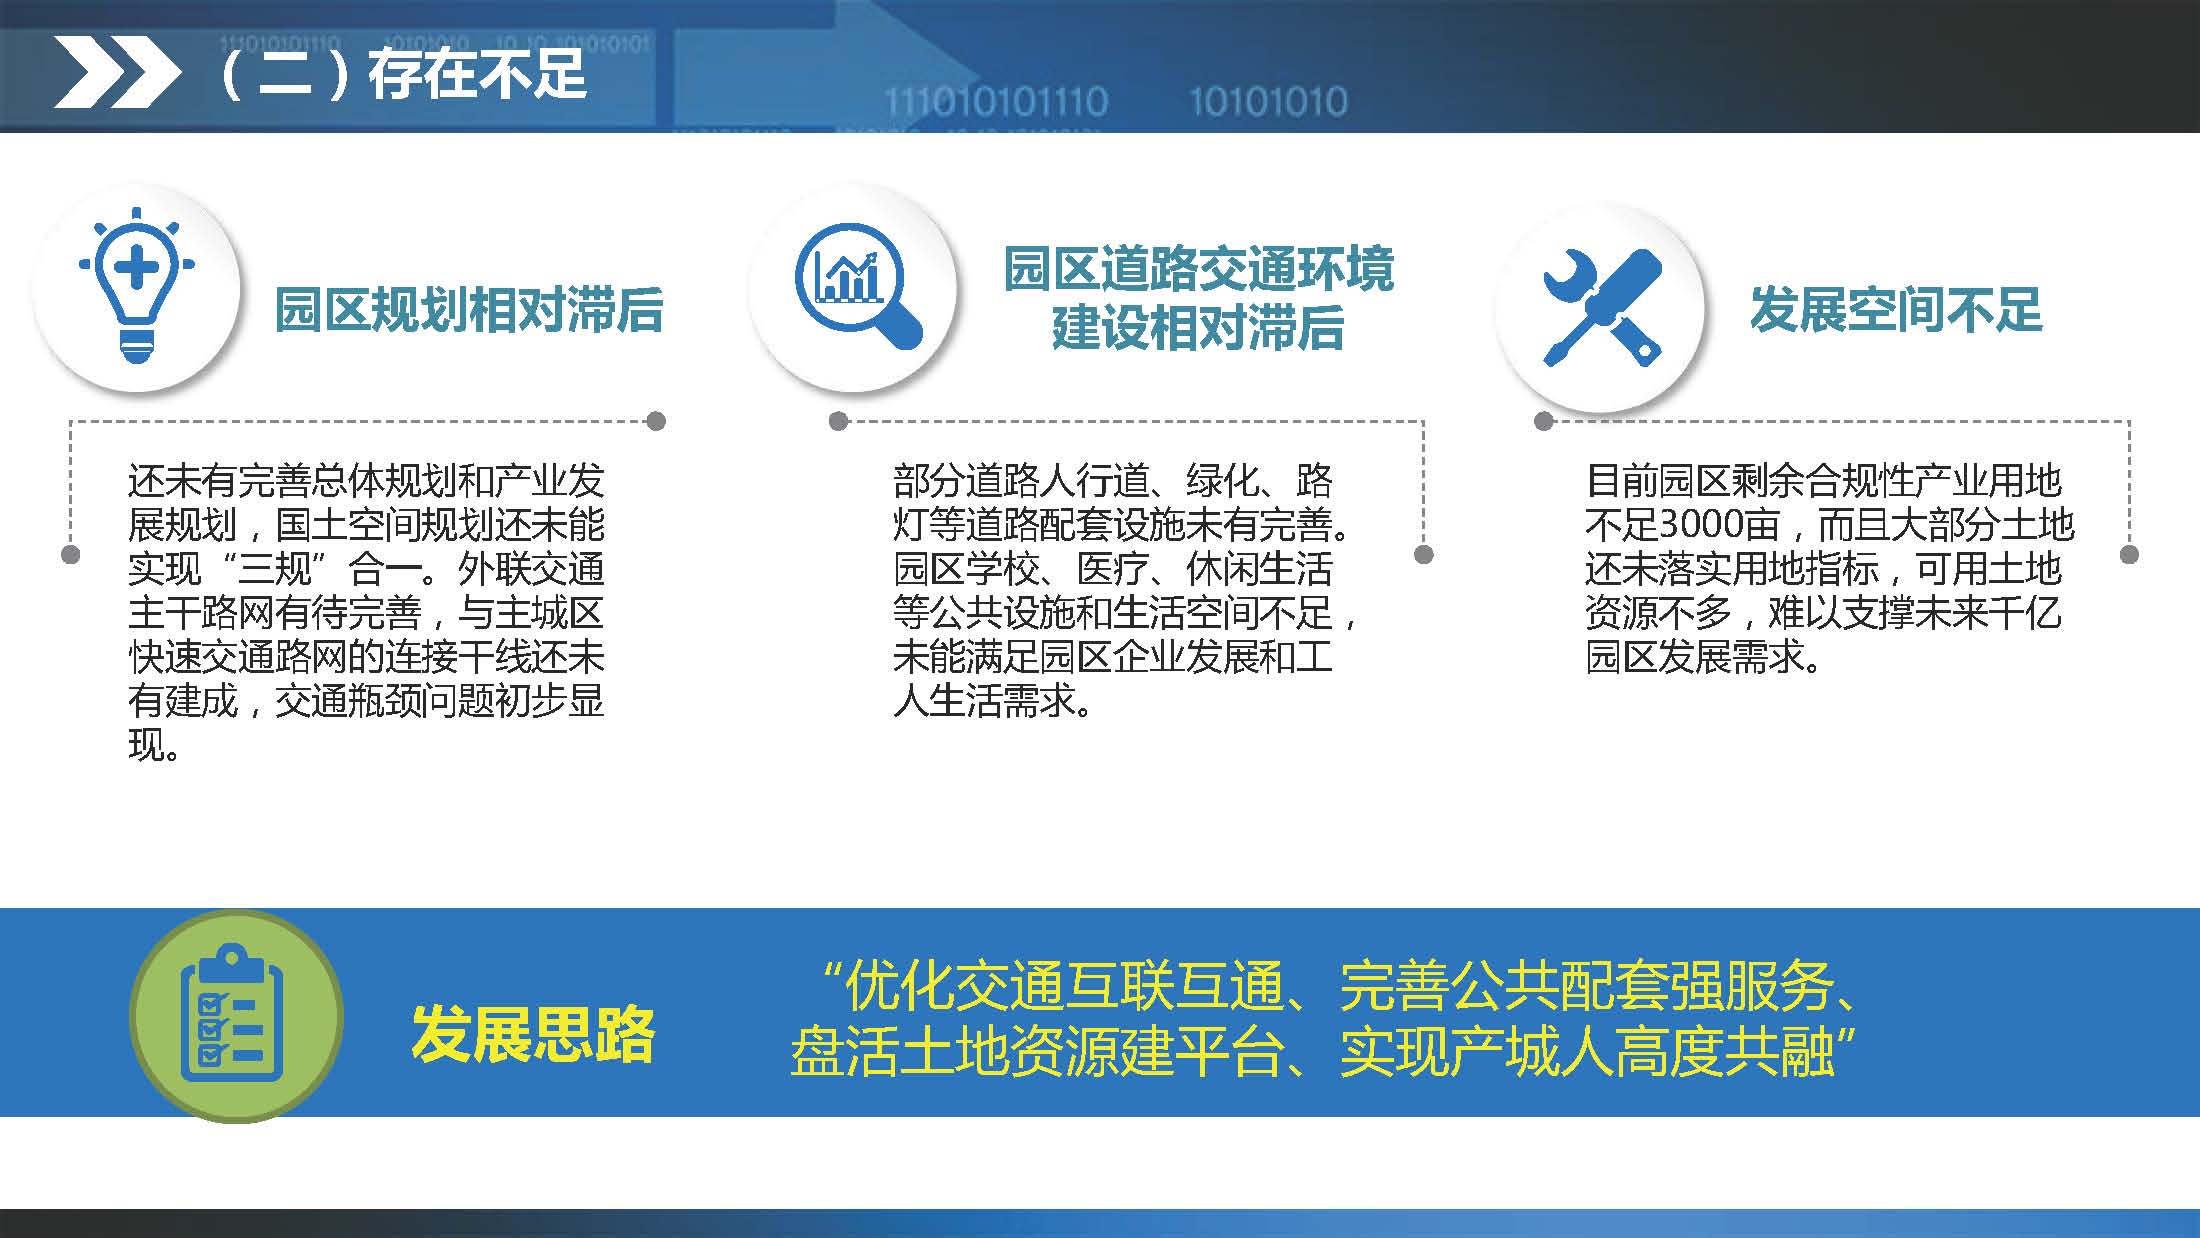 《江门蓬江产业转移工业园建设三年行动计划（2020-2022年）》图文解读_页面_06.jpg